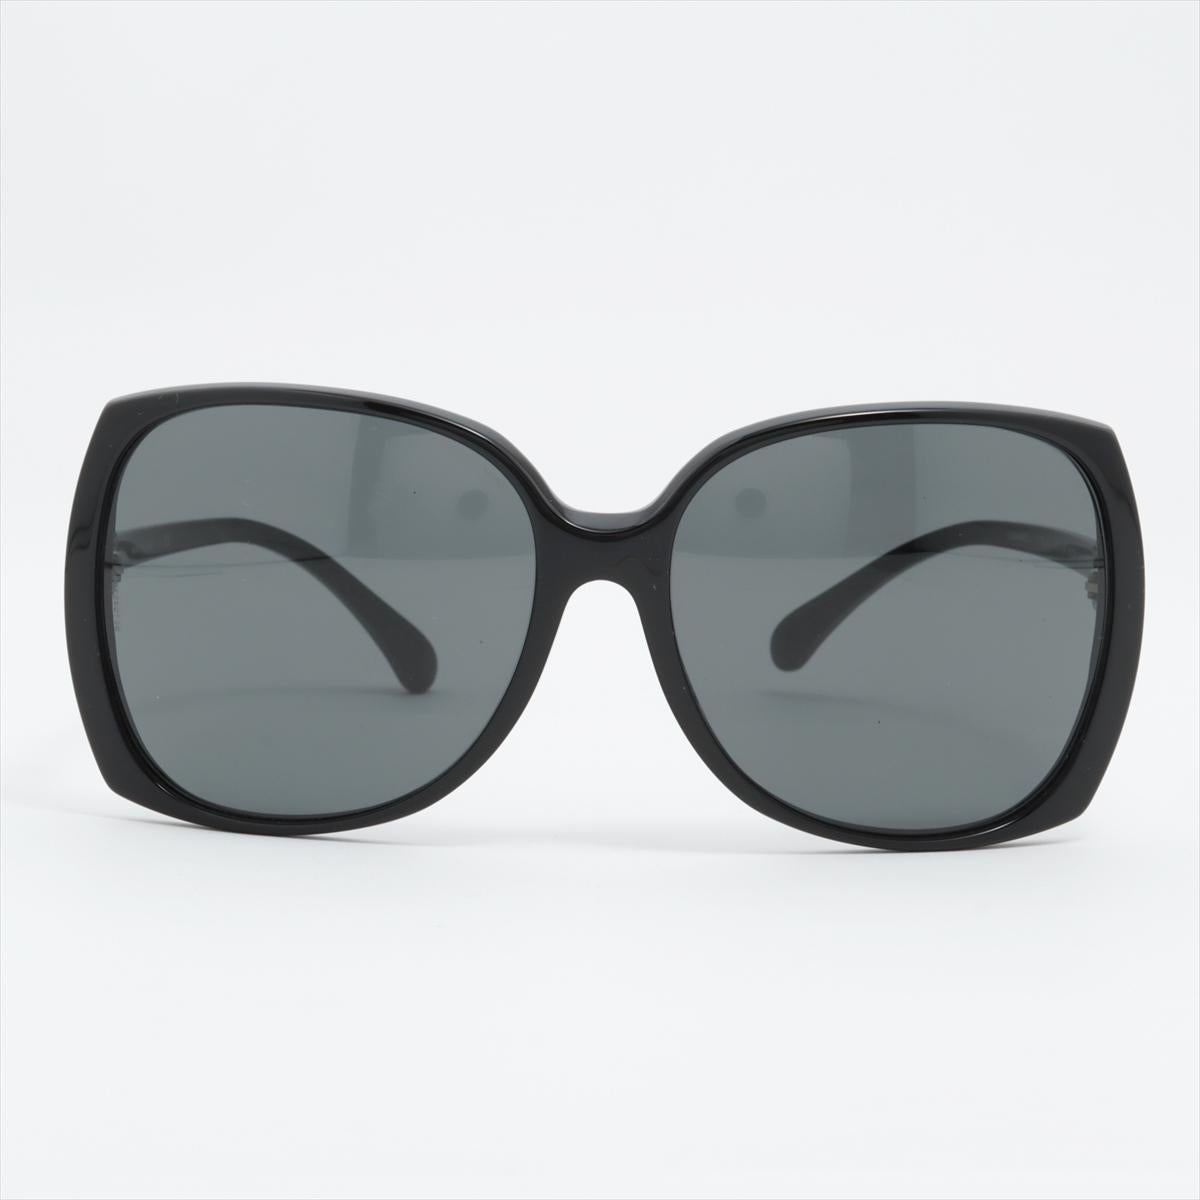 Die Chanel CC Logo Oversized Square Sonnenbrille in Plastic Black strahlt zeitlose Eleganz und Raffinesse aus. Mit ihrem übergroßen, quadratischen Rahmen setzt die Sonnenbrille ein gewagtes Statement und behält dabei ihre klassische Ästhetik bei.